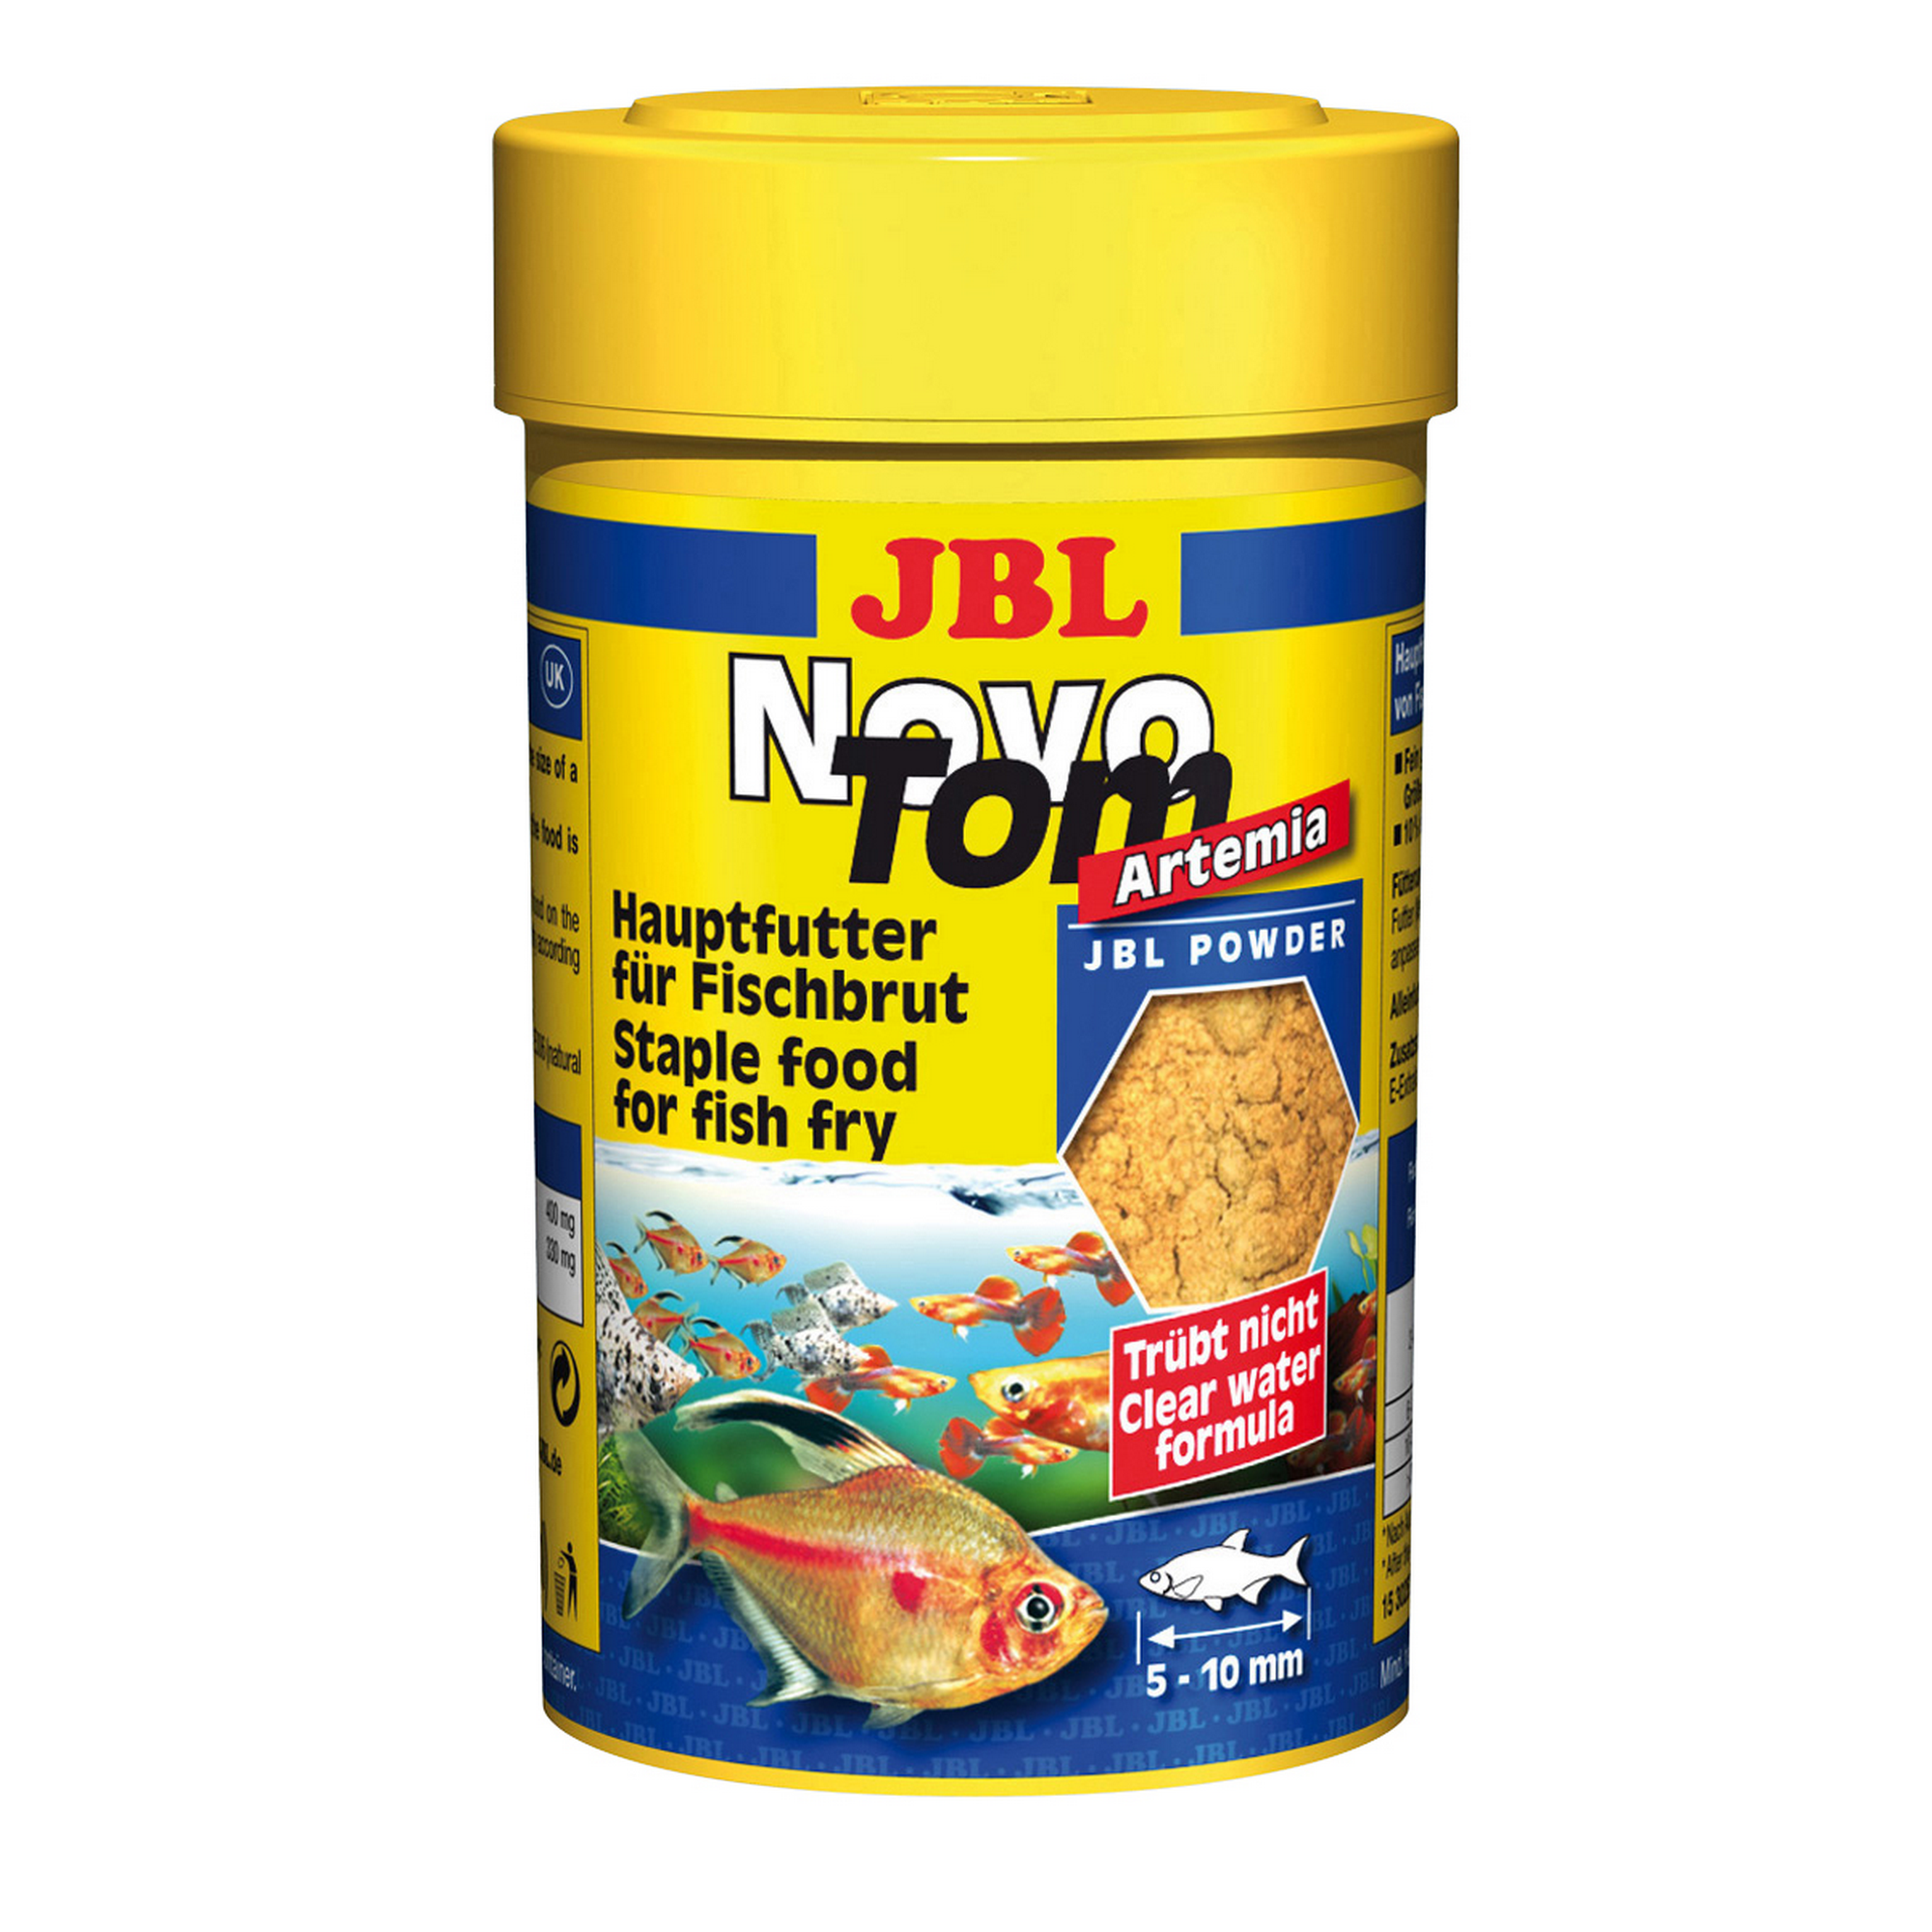 Novo Tom Artemia Hauptfutter für Fischbrut 100 ml + product picture